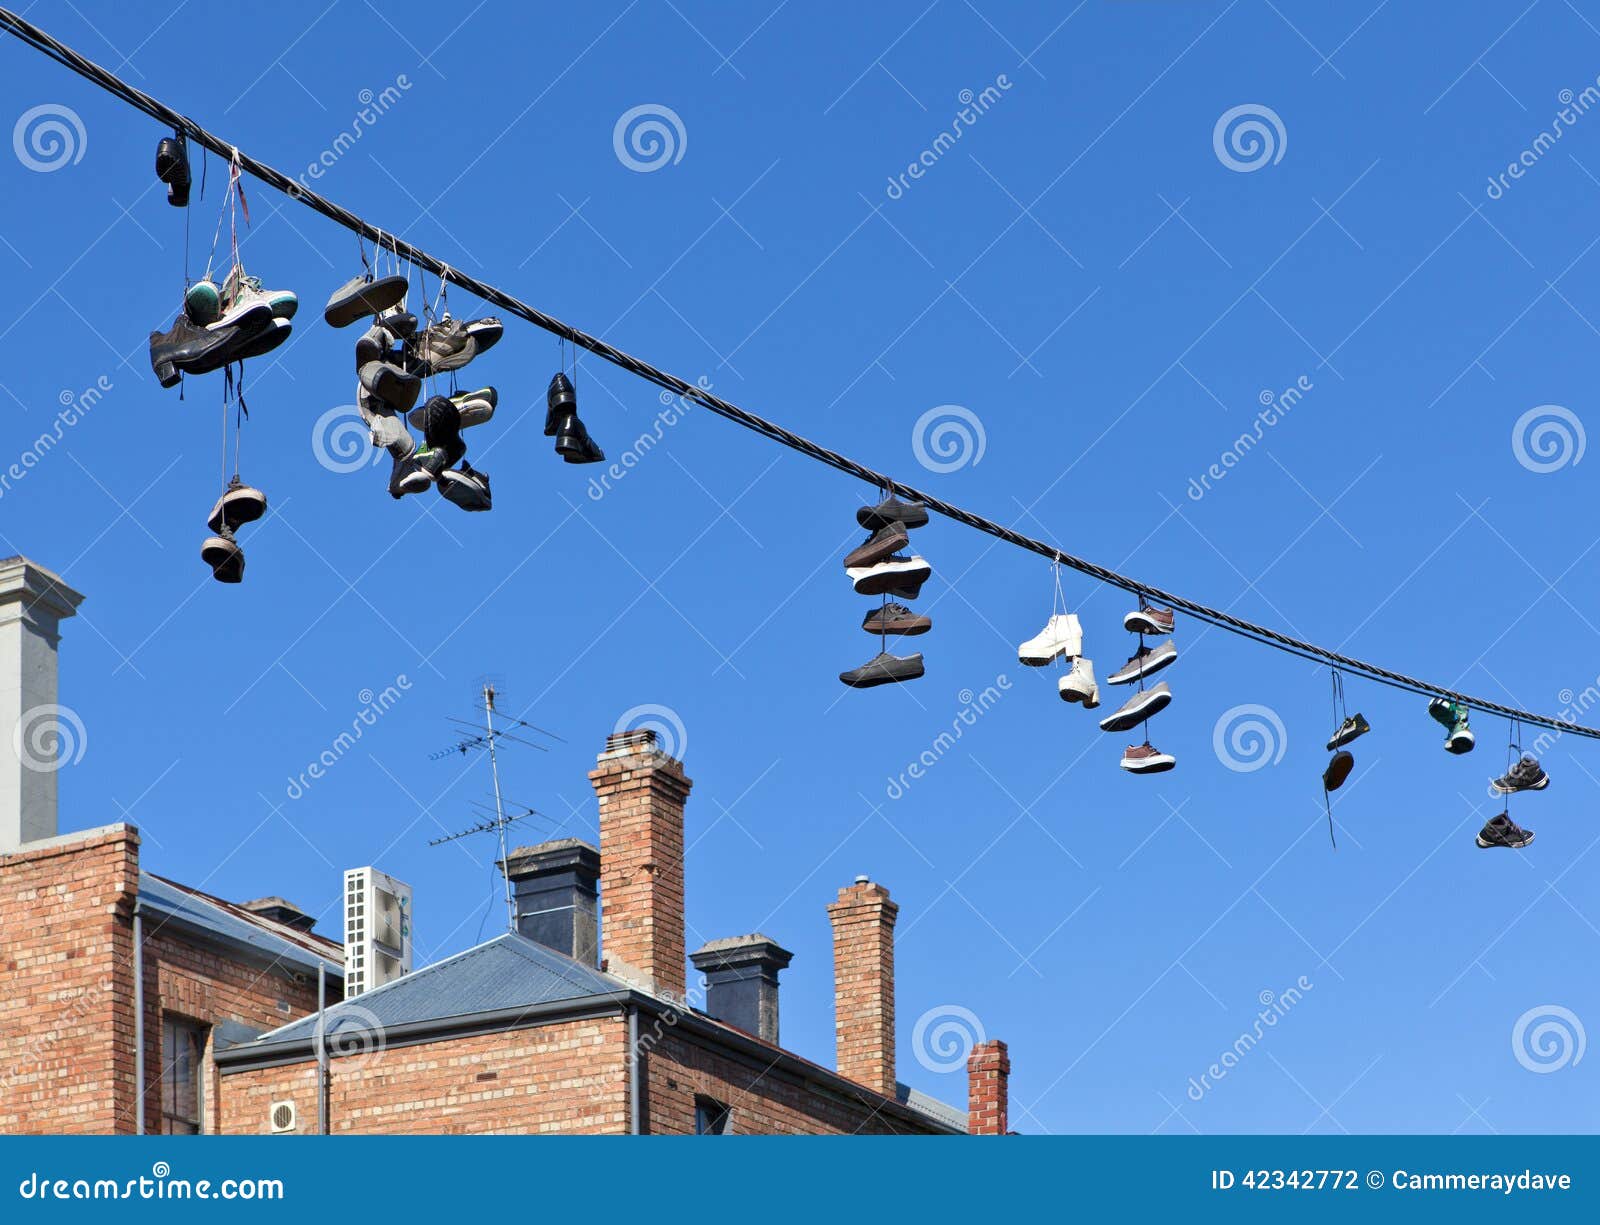 Зачем обувь на проводах. Обувь висит на проводах. Кроссовки на проводах. Найки висящие на проводах. Кеды на проводах.